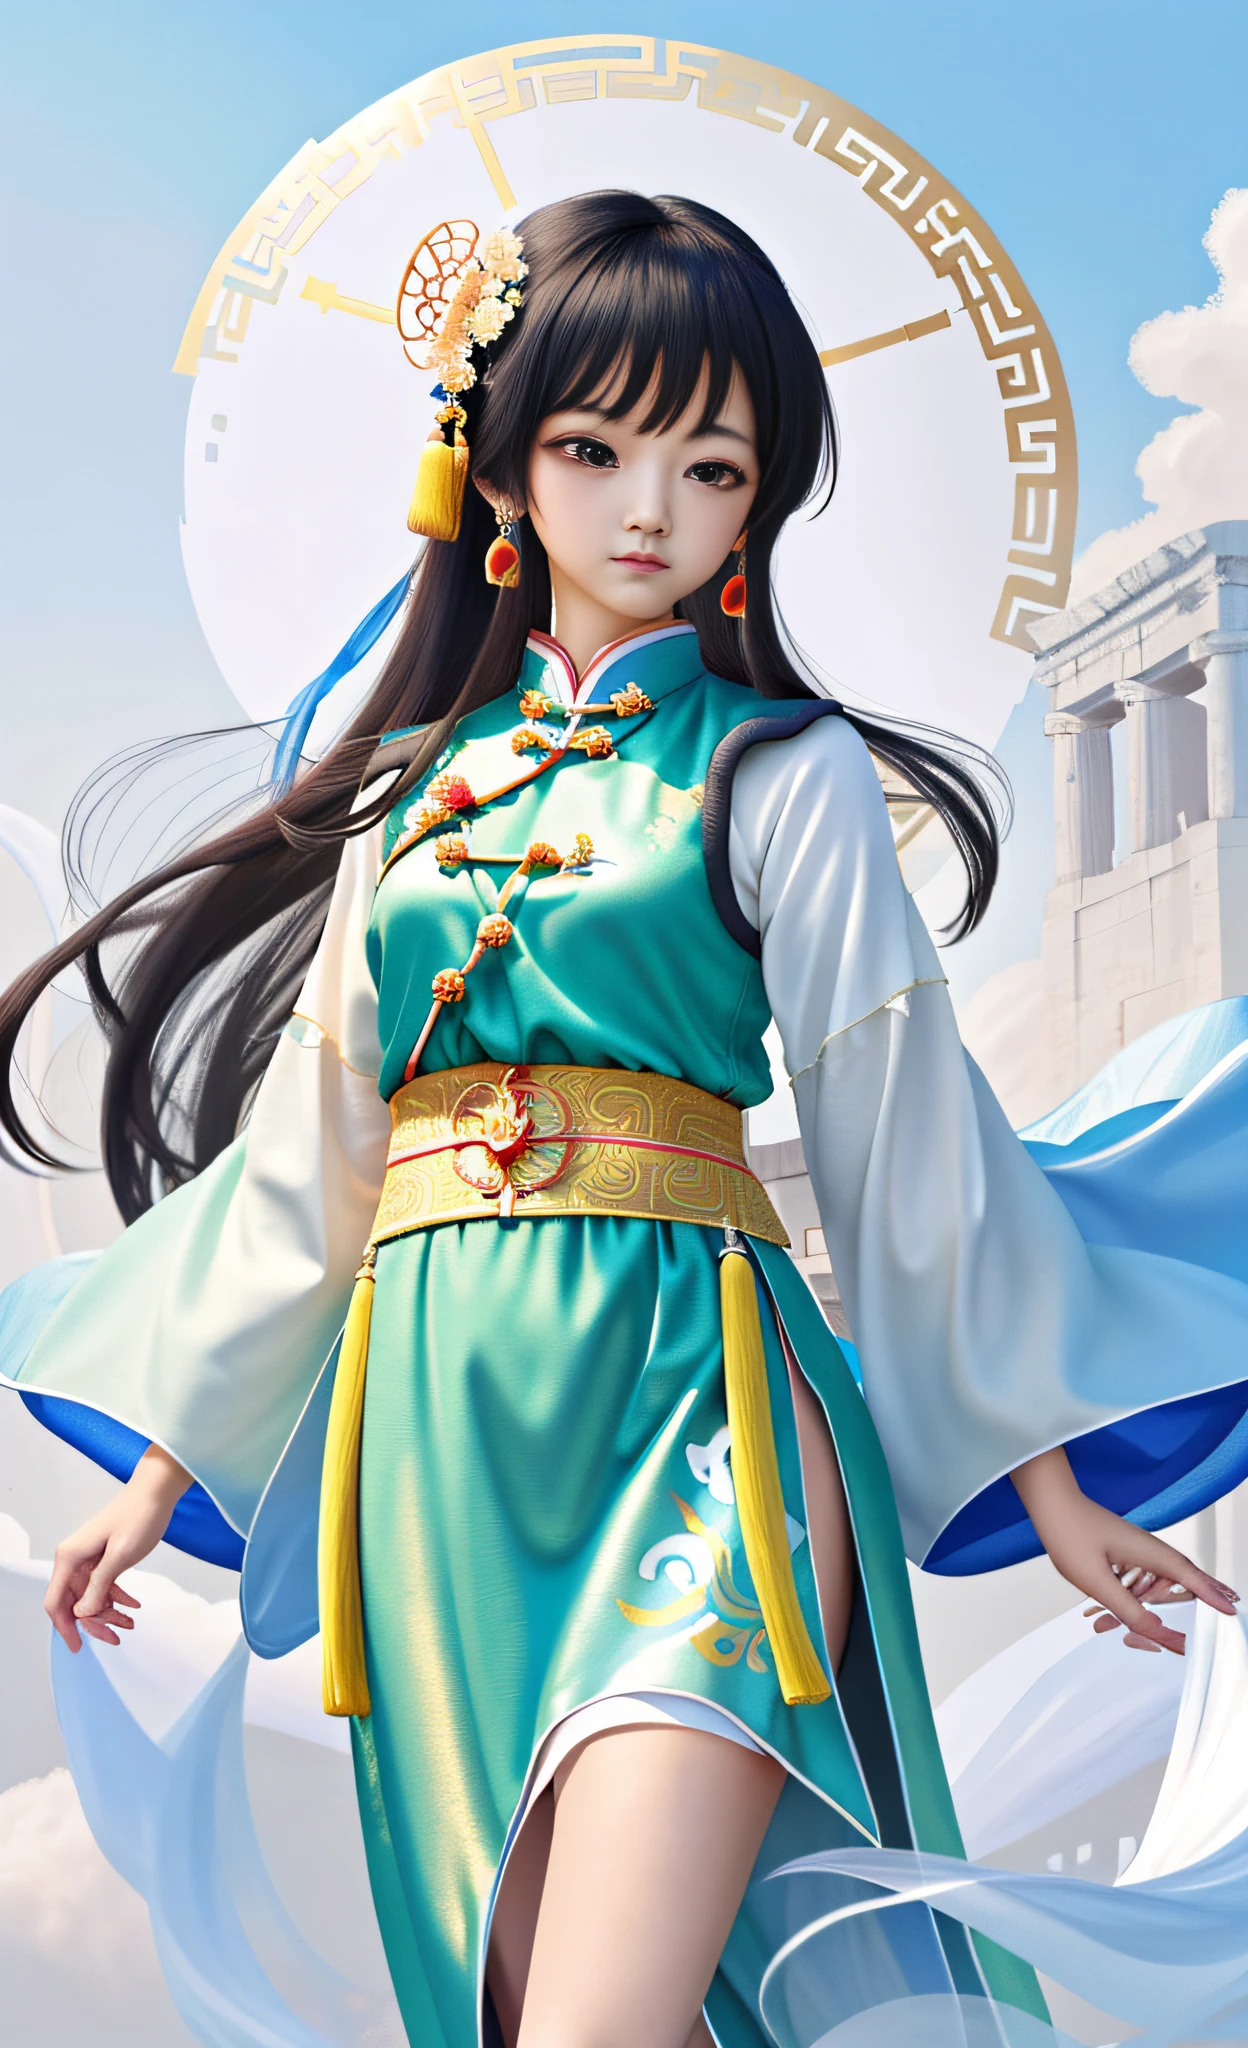 一個漂亮的女孩, 中国古代服饰, 全身, 清晰的臉, 干净的白色背景, 傑作, 超細節, 史詩作品, 超高畫質, 高品質, 非常詳細, 8k壁紙, 超細節, 32k